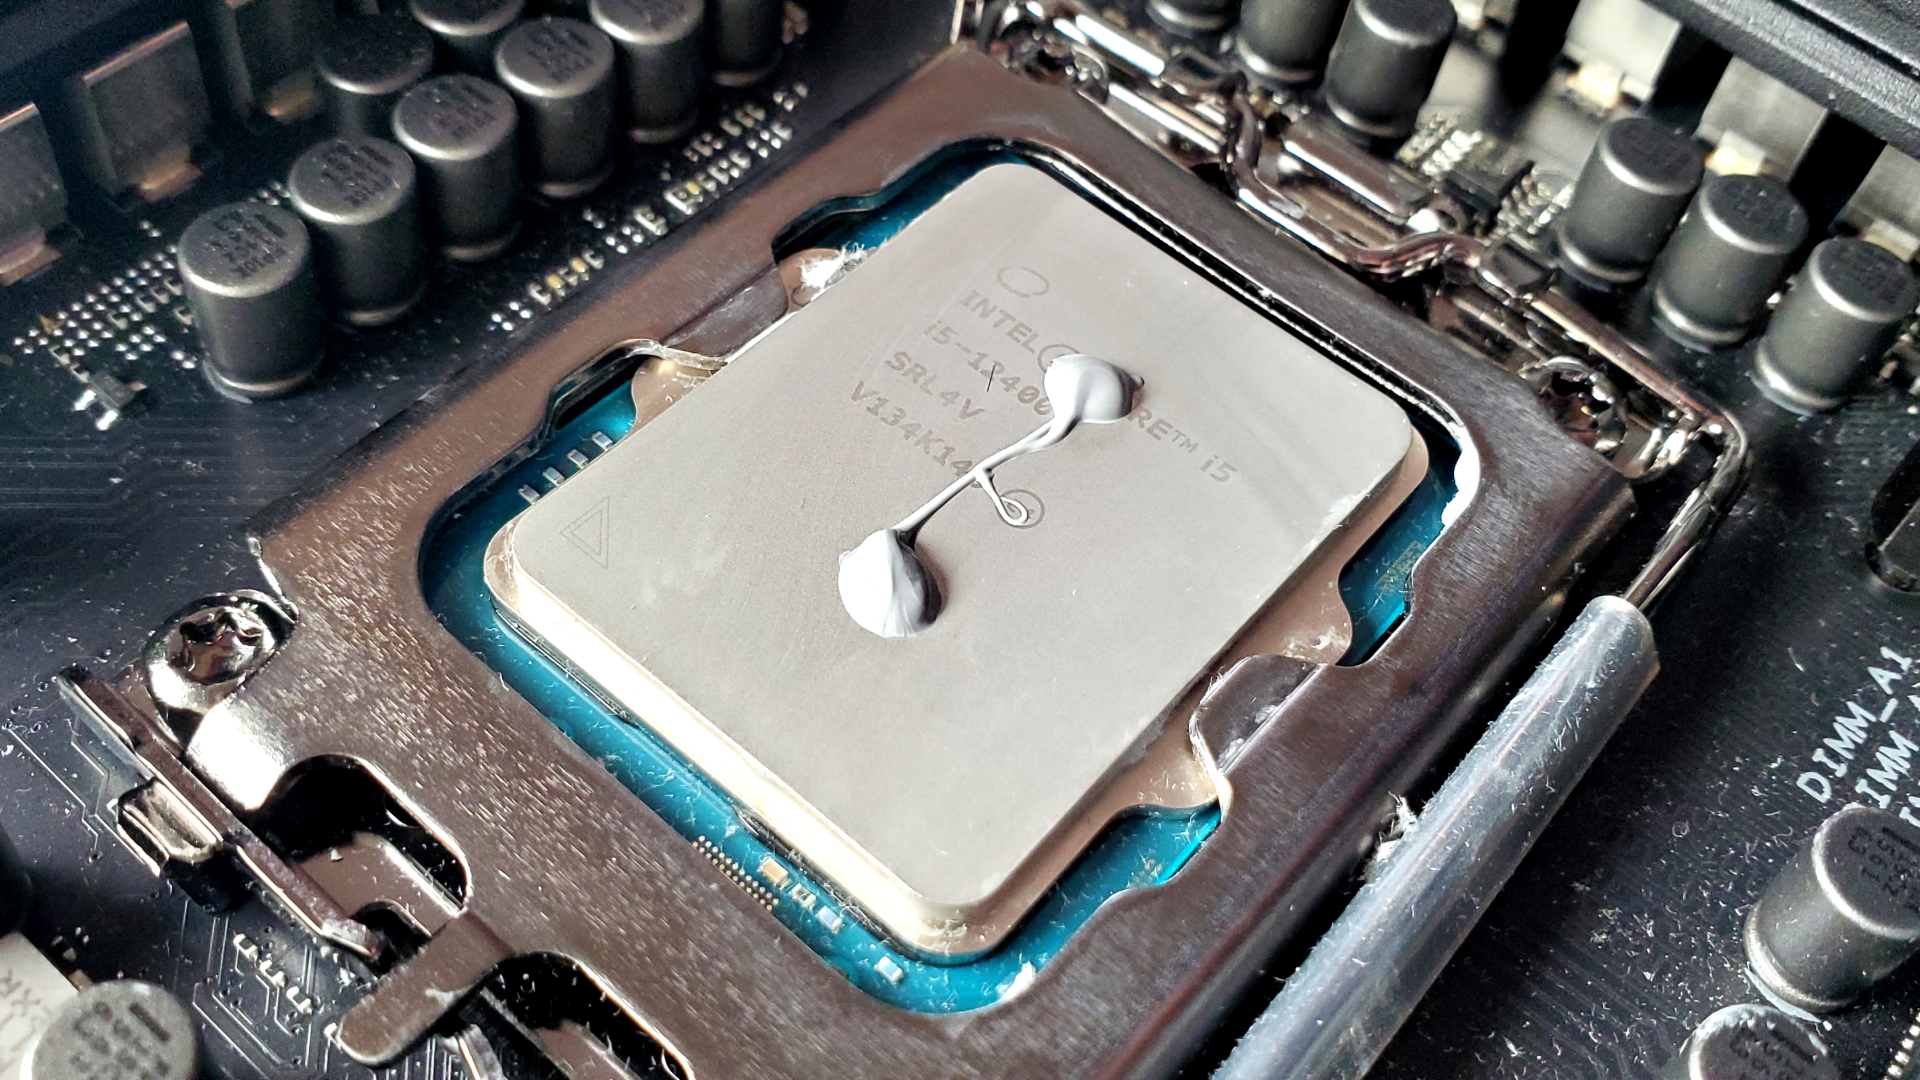 Pâte thermique sur un CPU